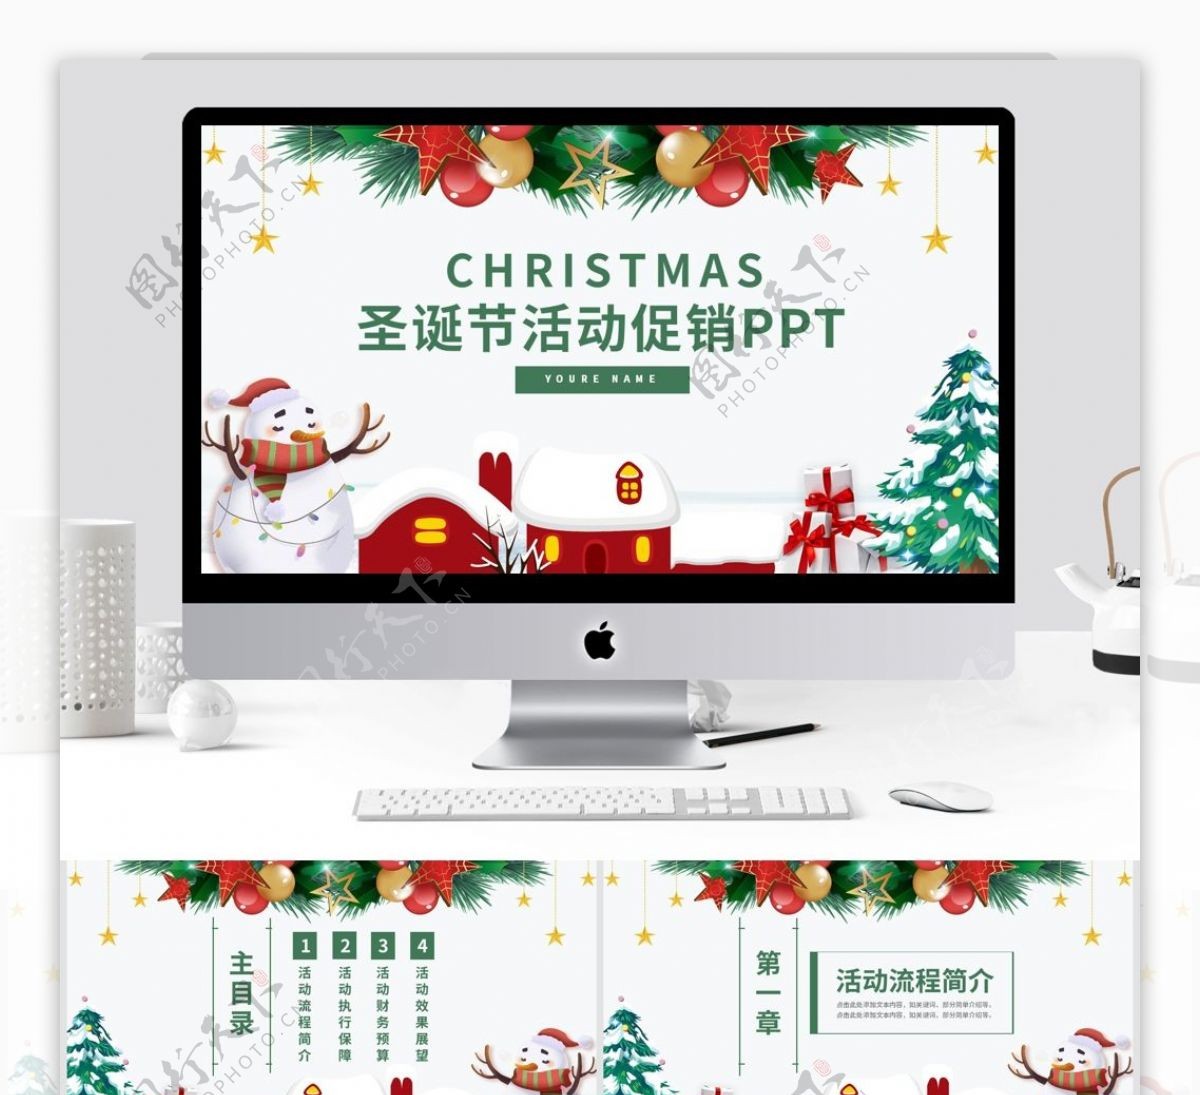 简约风圣诞节活动促销方案通用PT模板